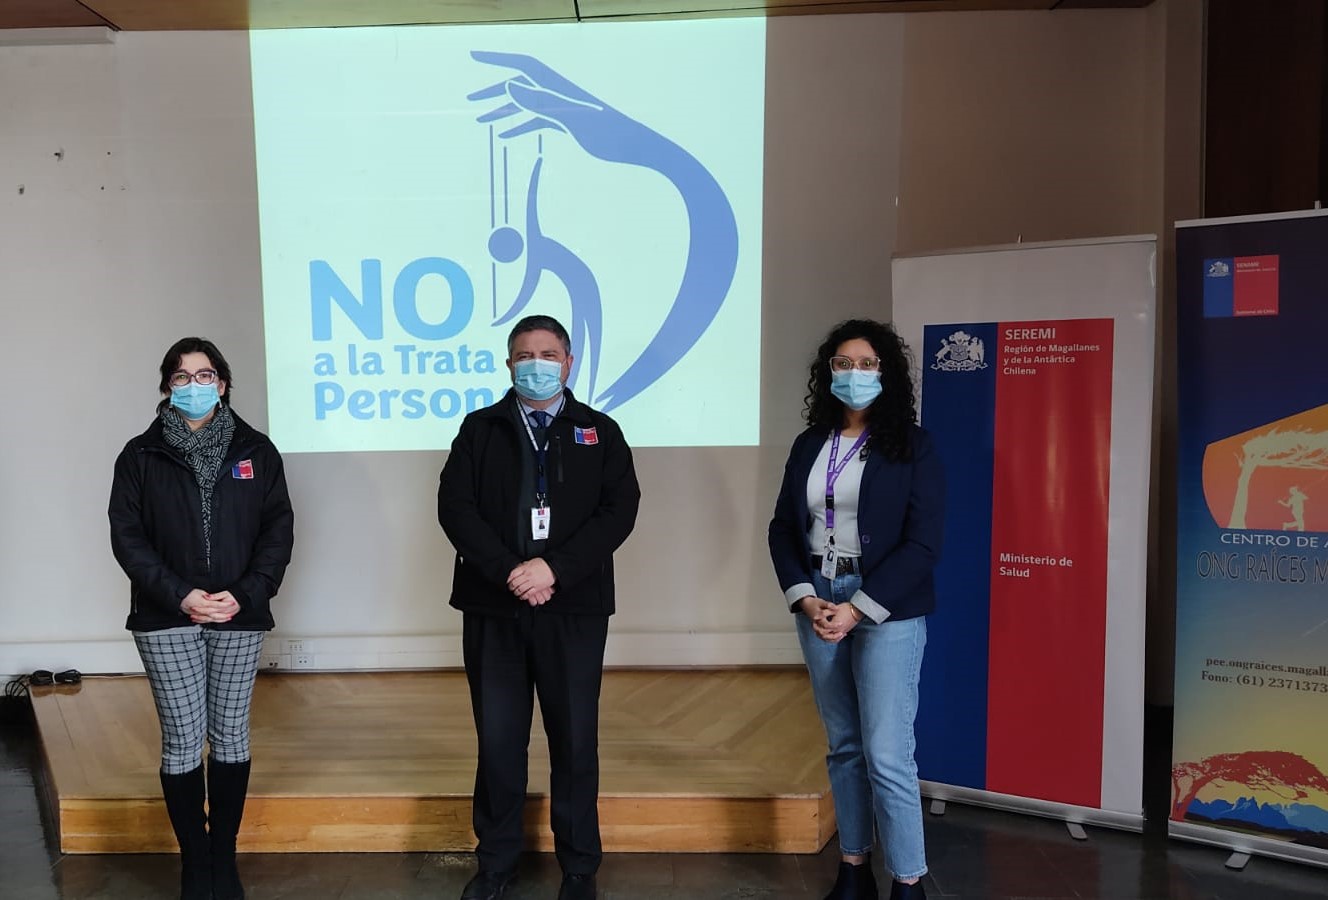 Seremi de Salud junto a Ong Raíces presentan logo y capsula educativa con motivo del día internacional de la No Trata de Personas